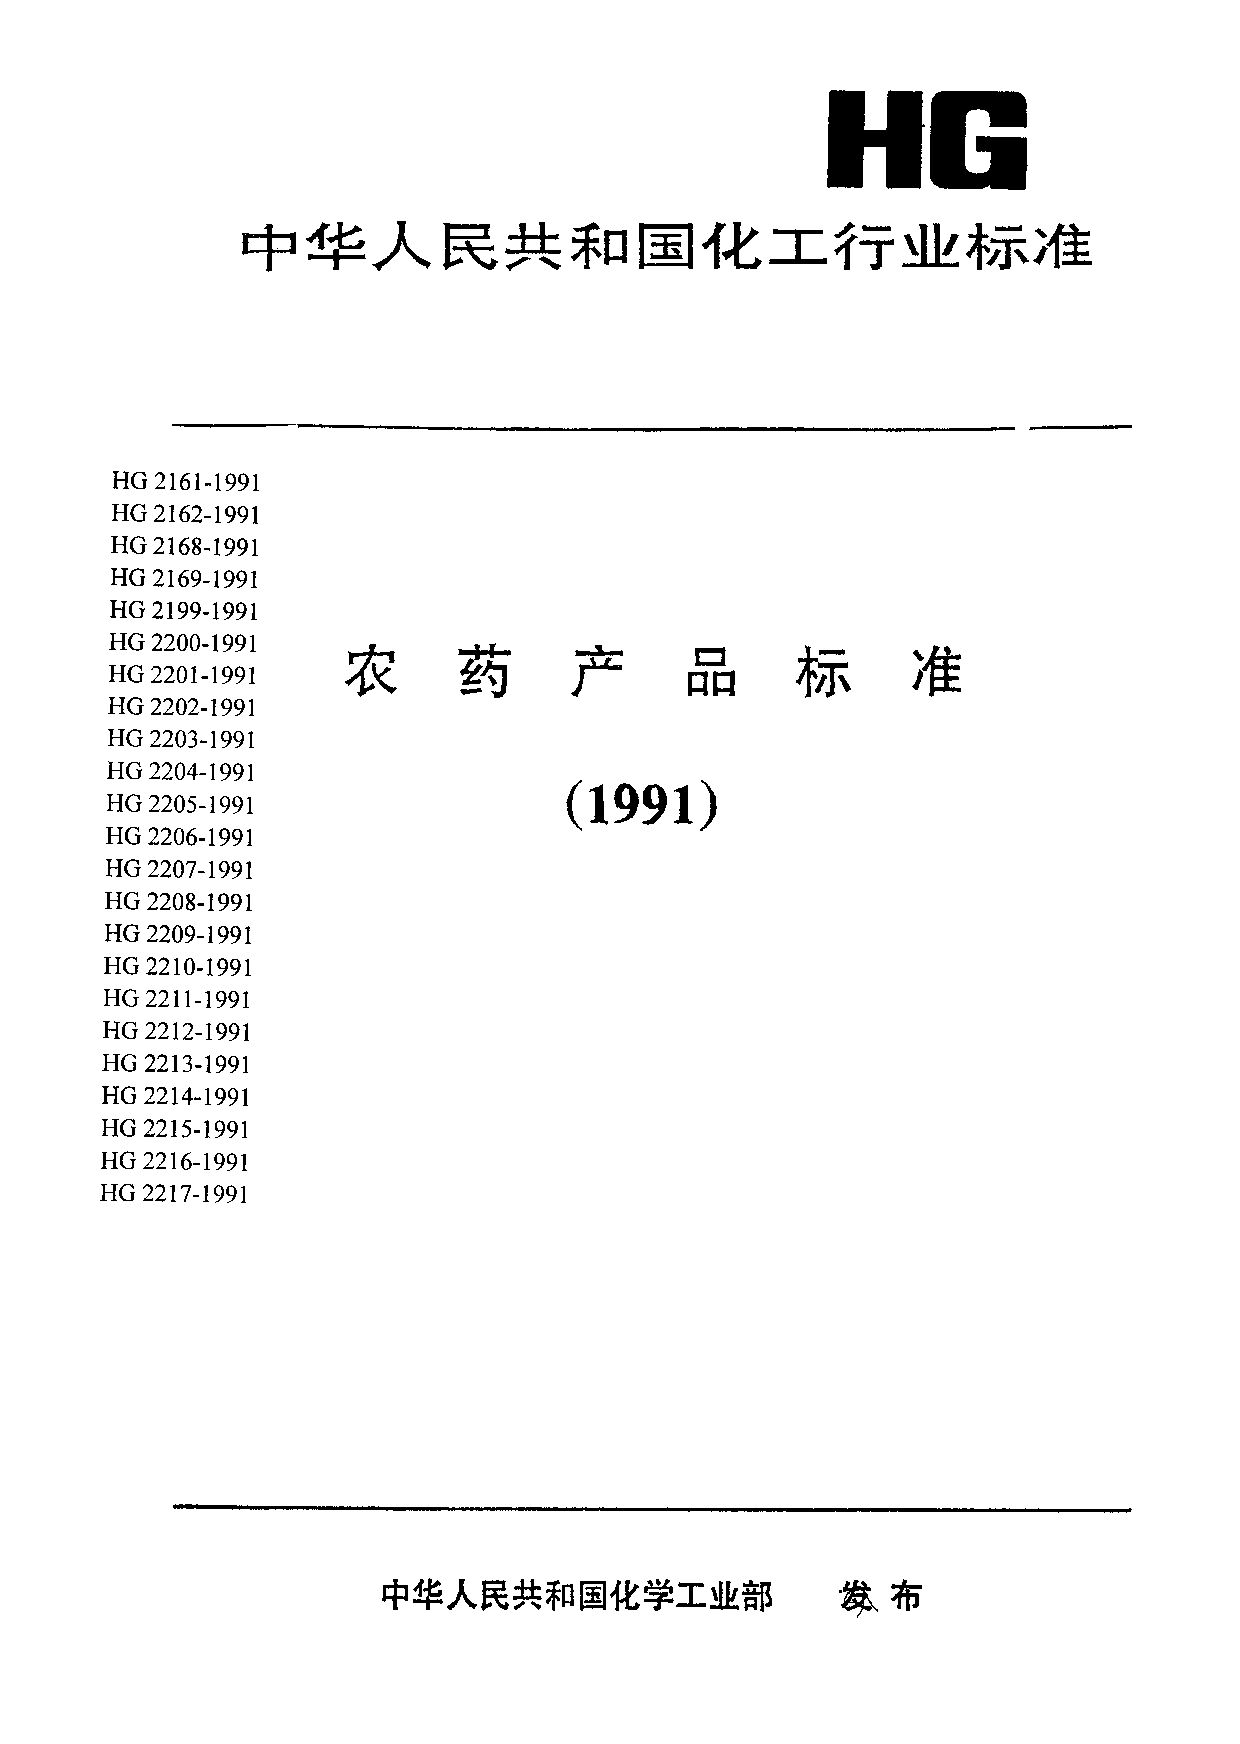 HG 2207-1991封面图